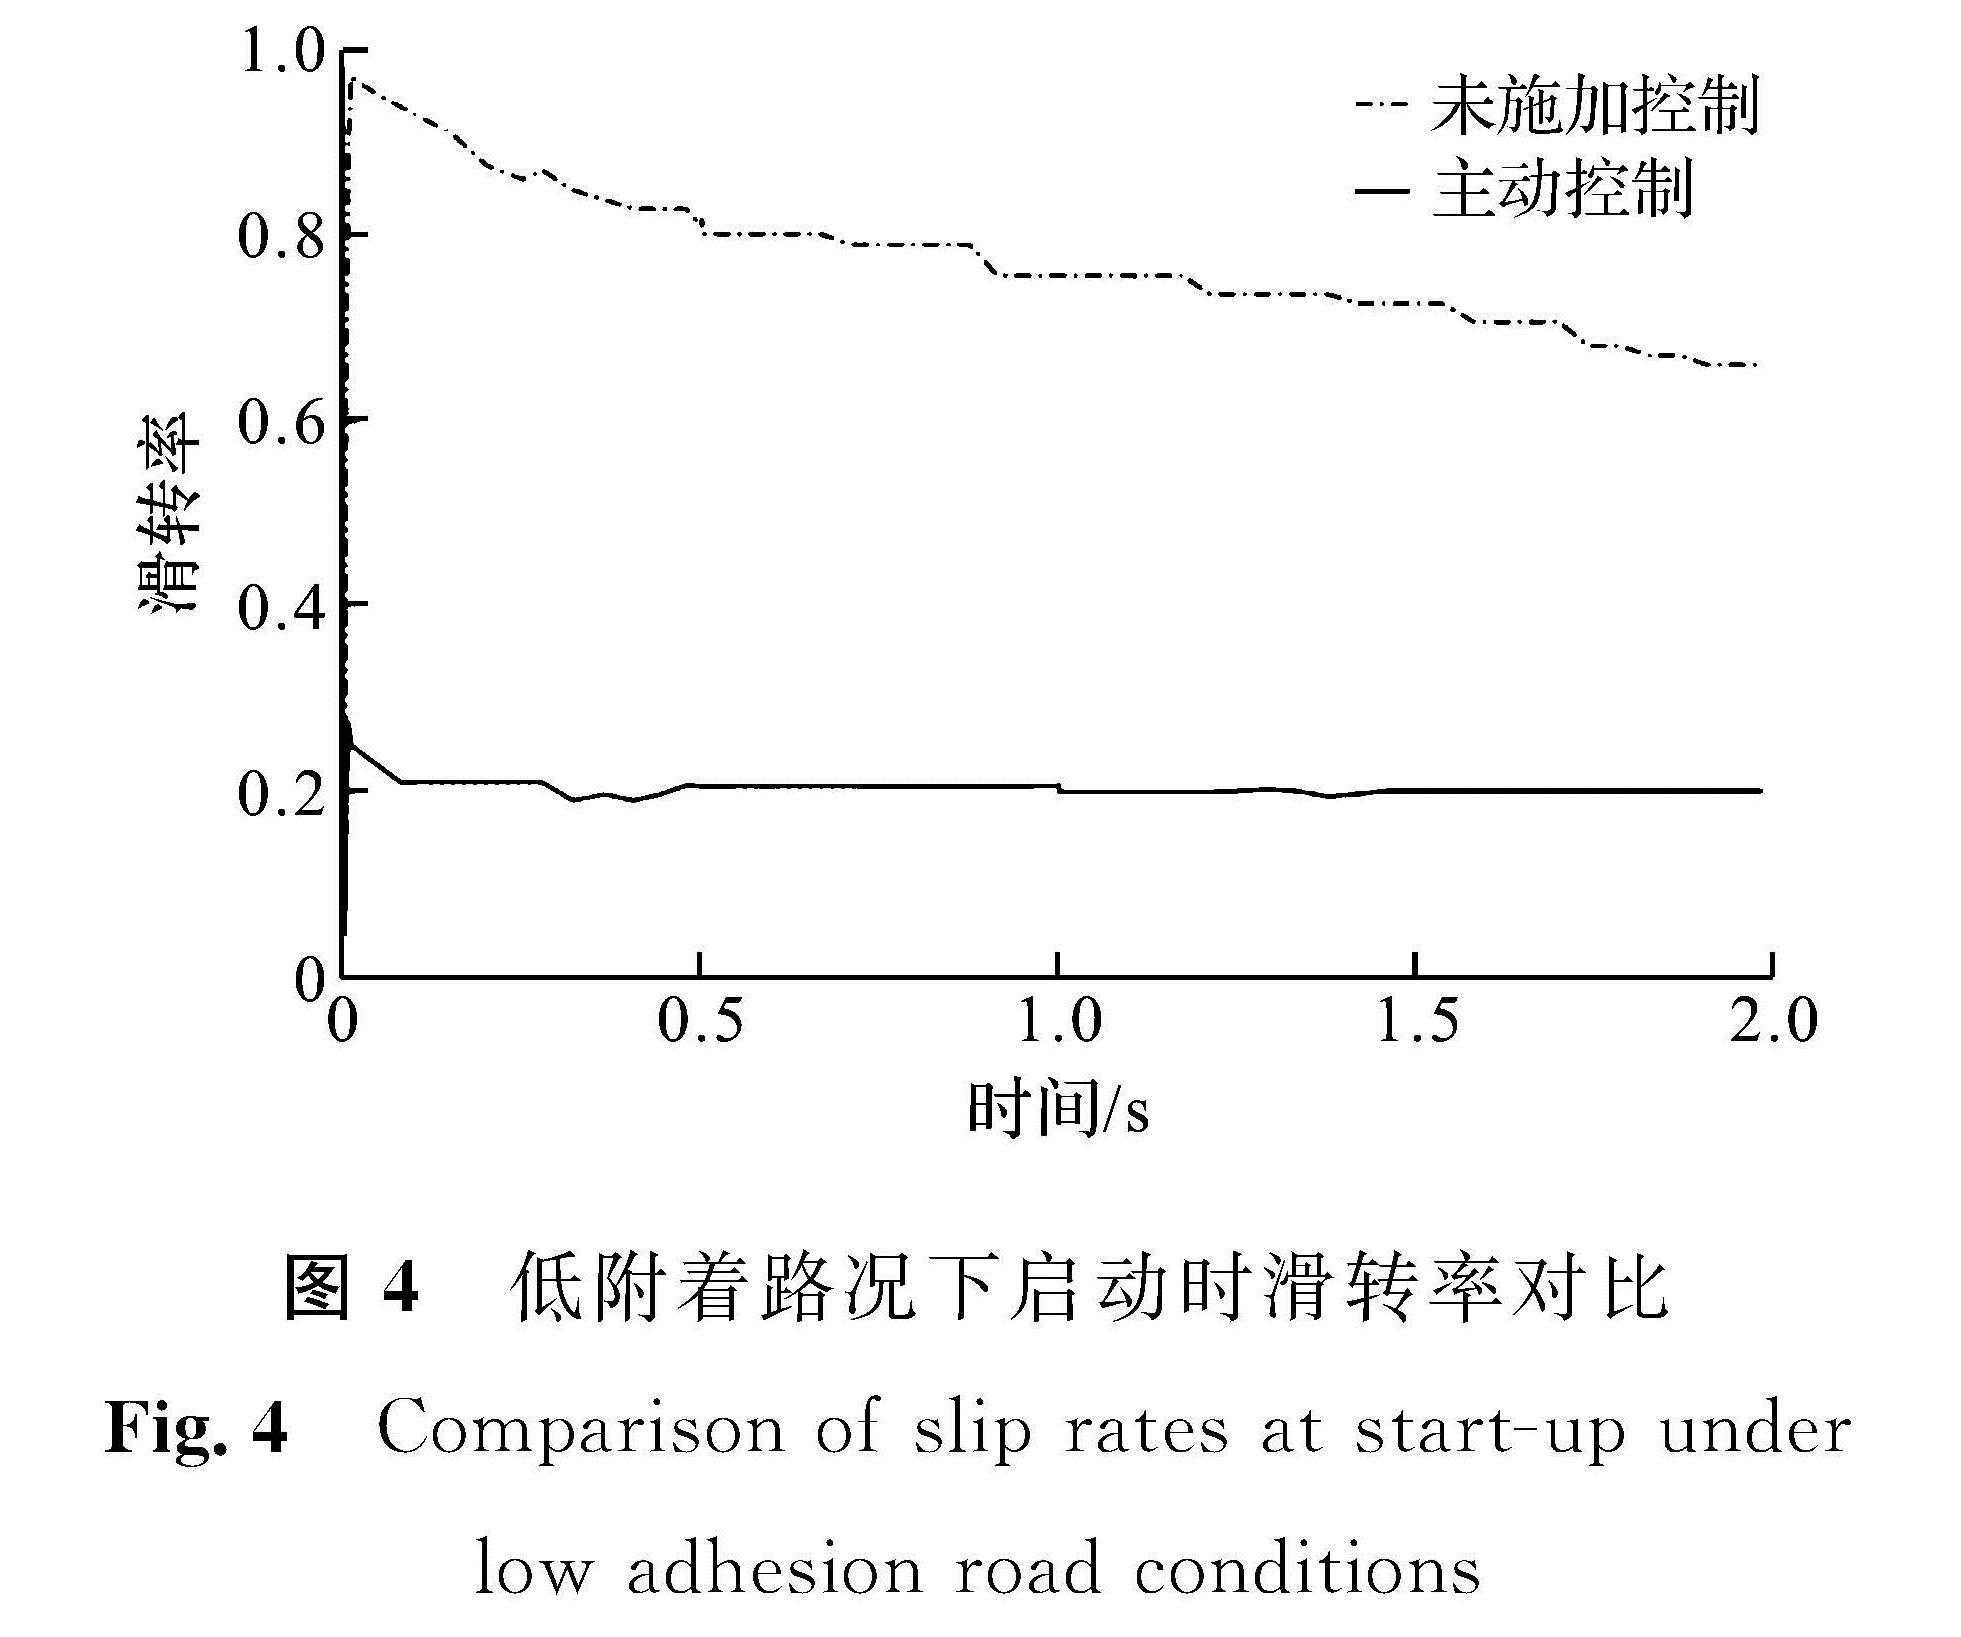 图4 低附着路况下启动时滑转率对比<br/>Fig.4 Comparison of slip rates at start-up under low adhesion road conditions